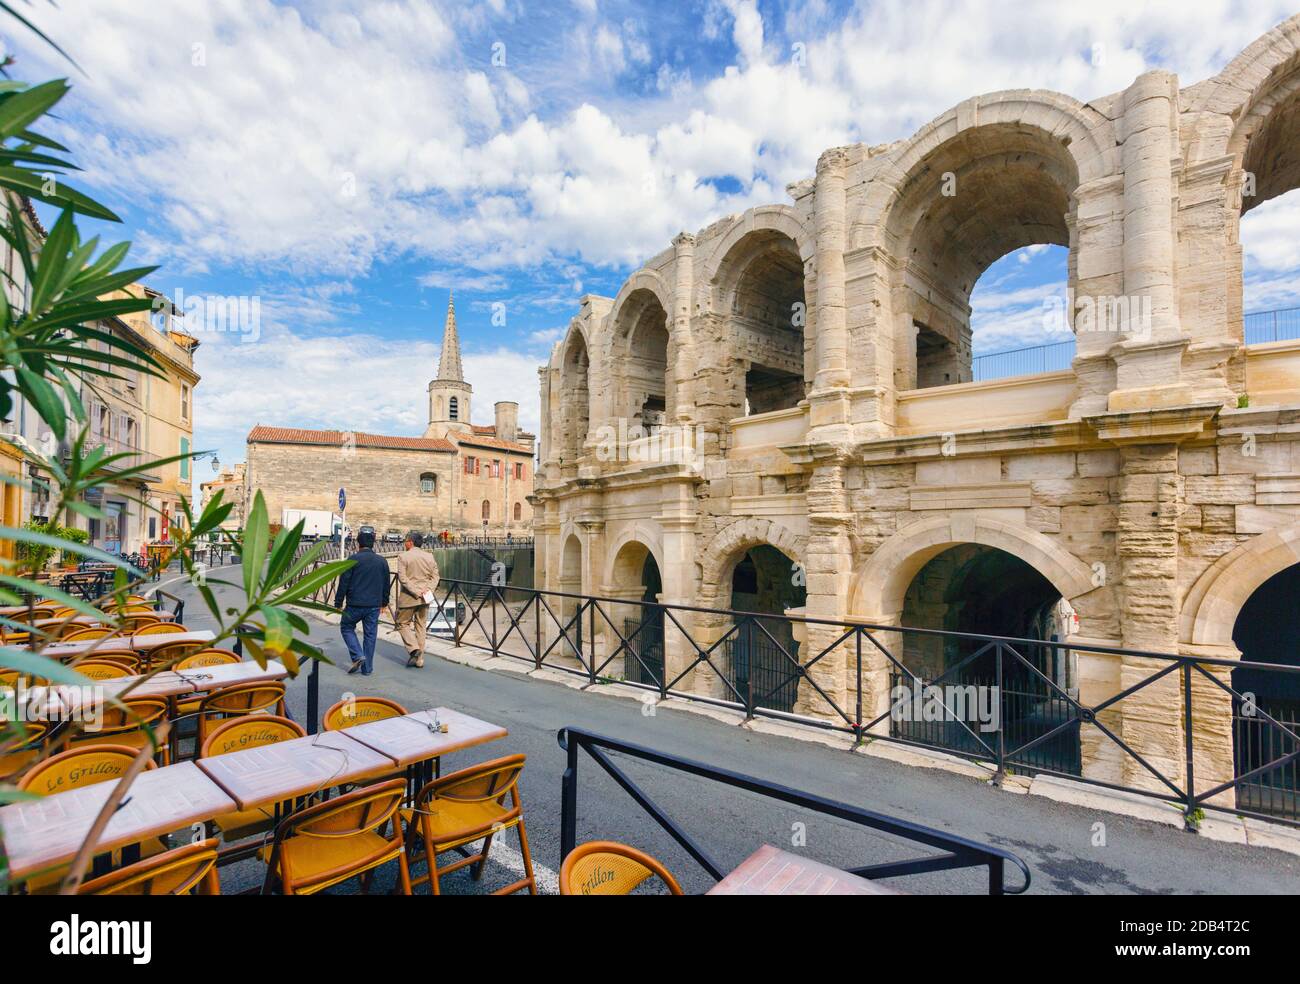 Arles, Provence-Alpes-Côte d'Azur, France. Amphithéâtre romain. Arles est un site classé au patrimoine mondial de l'UNESCO. Banque D'Images